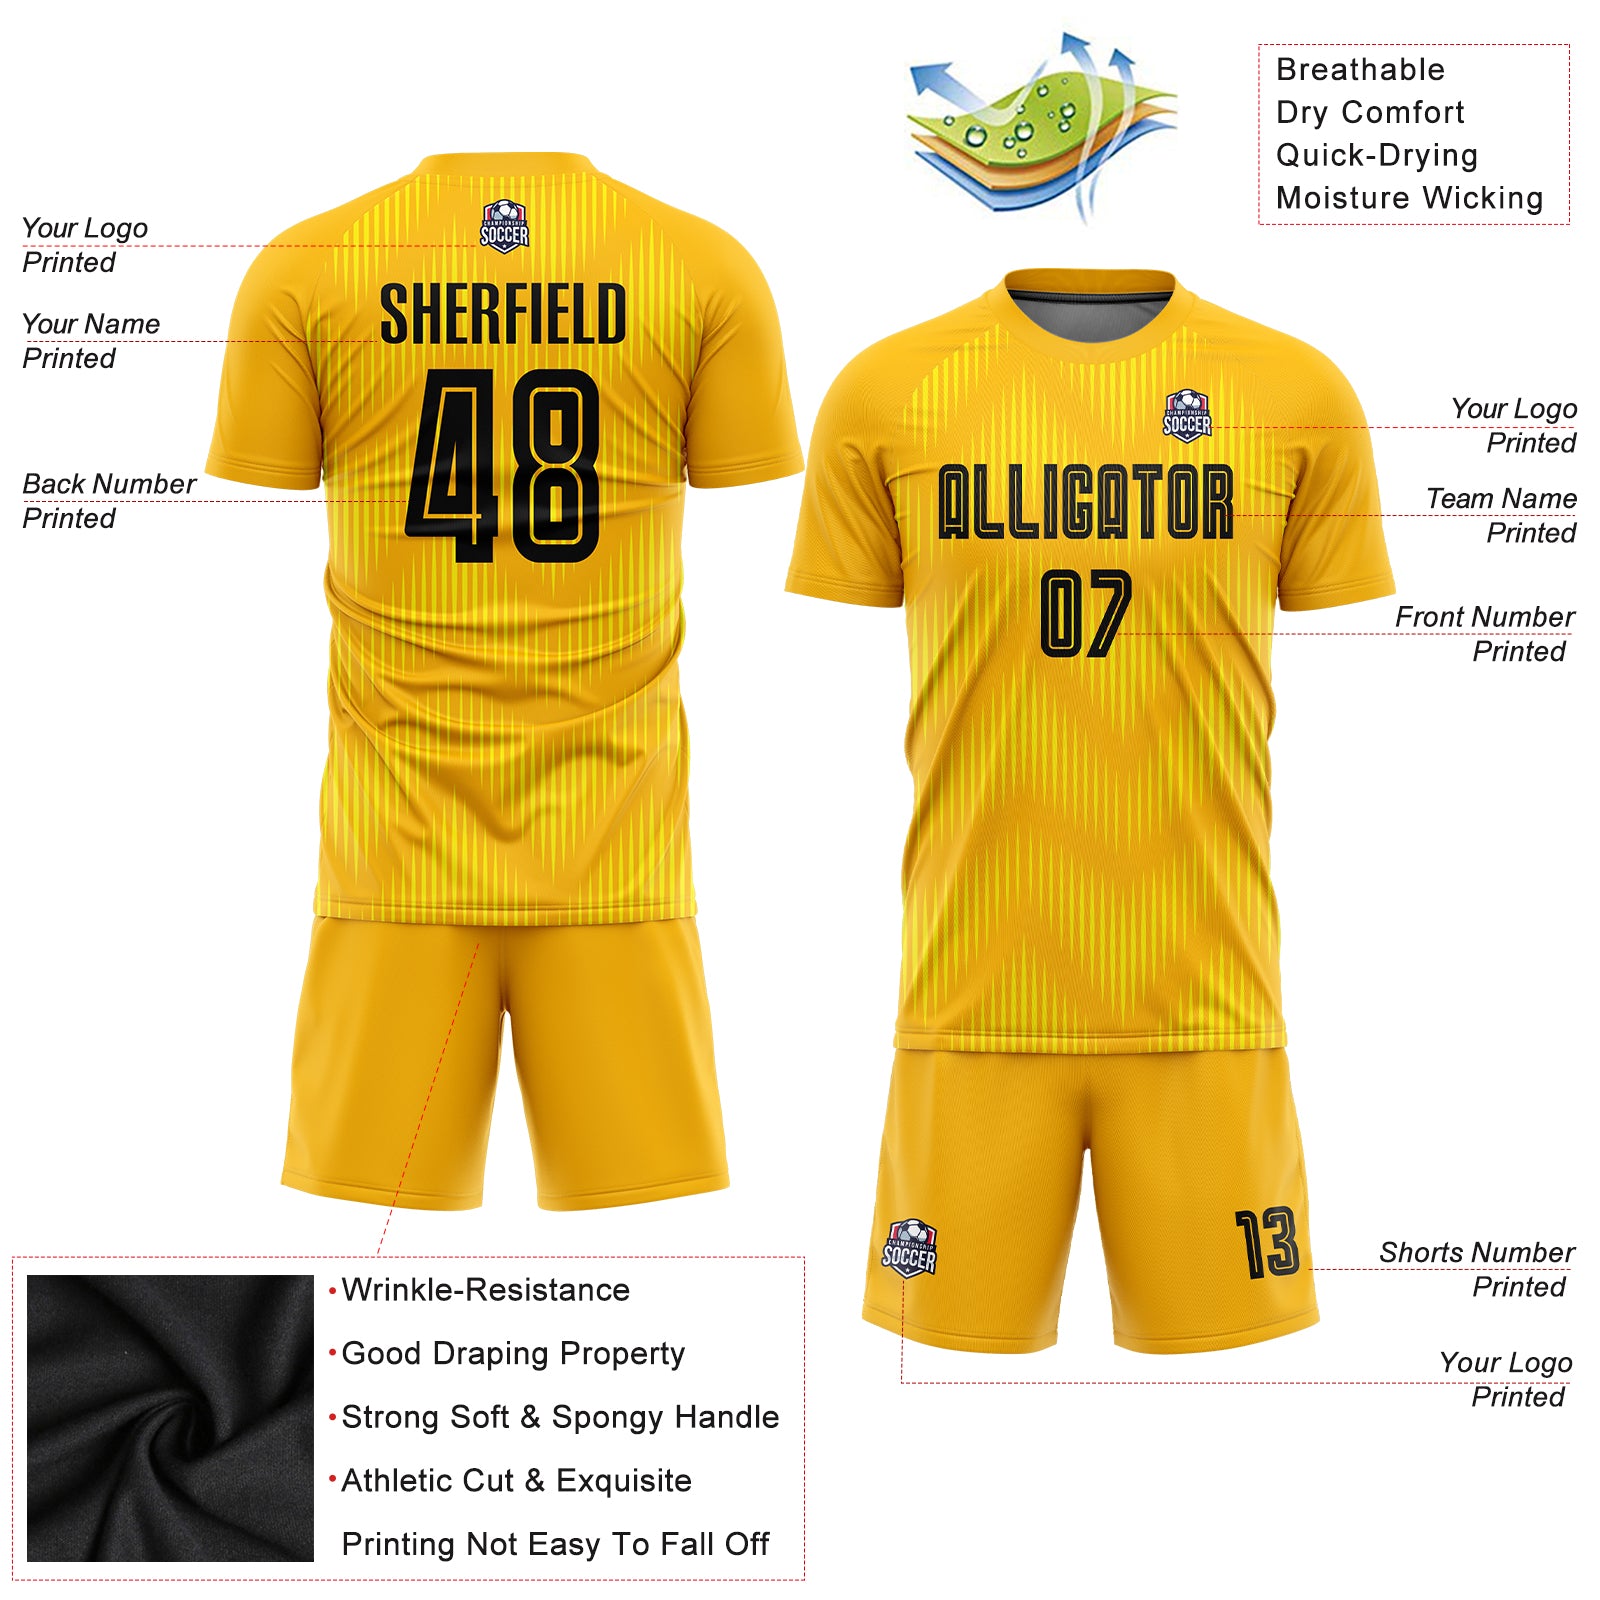 Custom Old Gold Black Sublimation Soccer Uniform Jersey